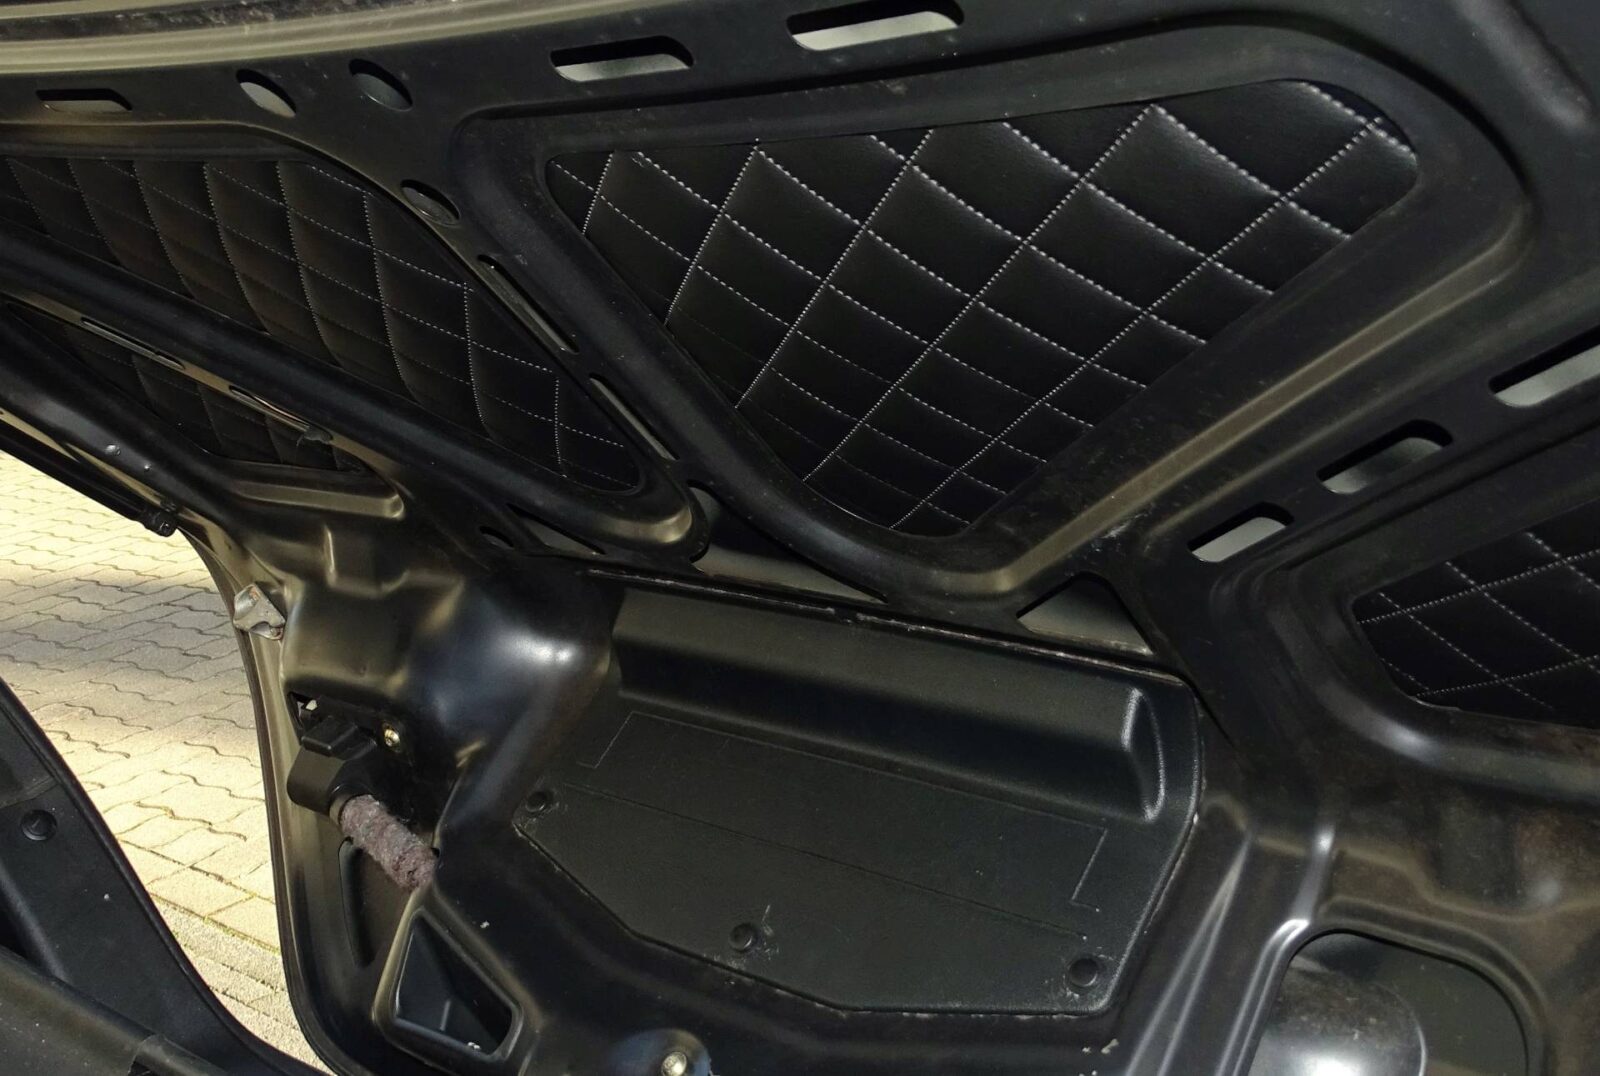 SLK R170 schwarze Kofferraum-Inlays mit Steppprägung